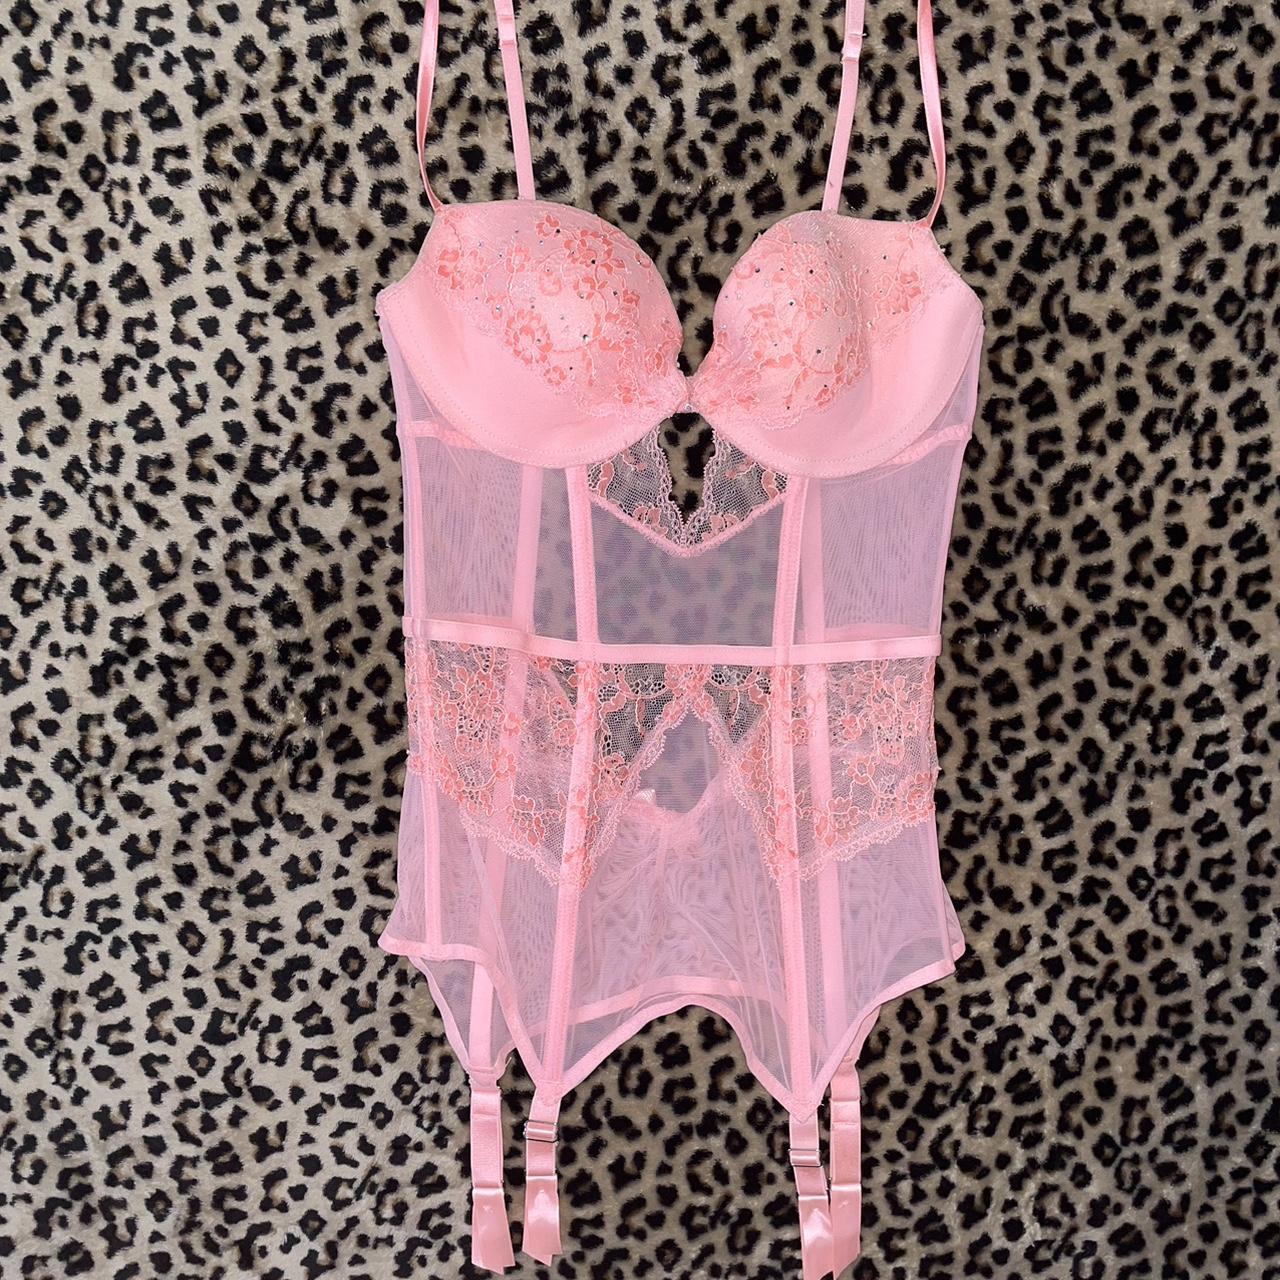 Victoria's Secret, Intimates & Sleepwear, Victorias Secret Pink Lacey Bra  Size 34c